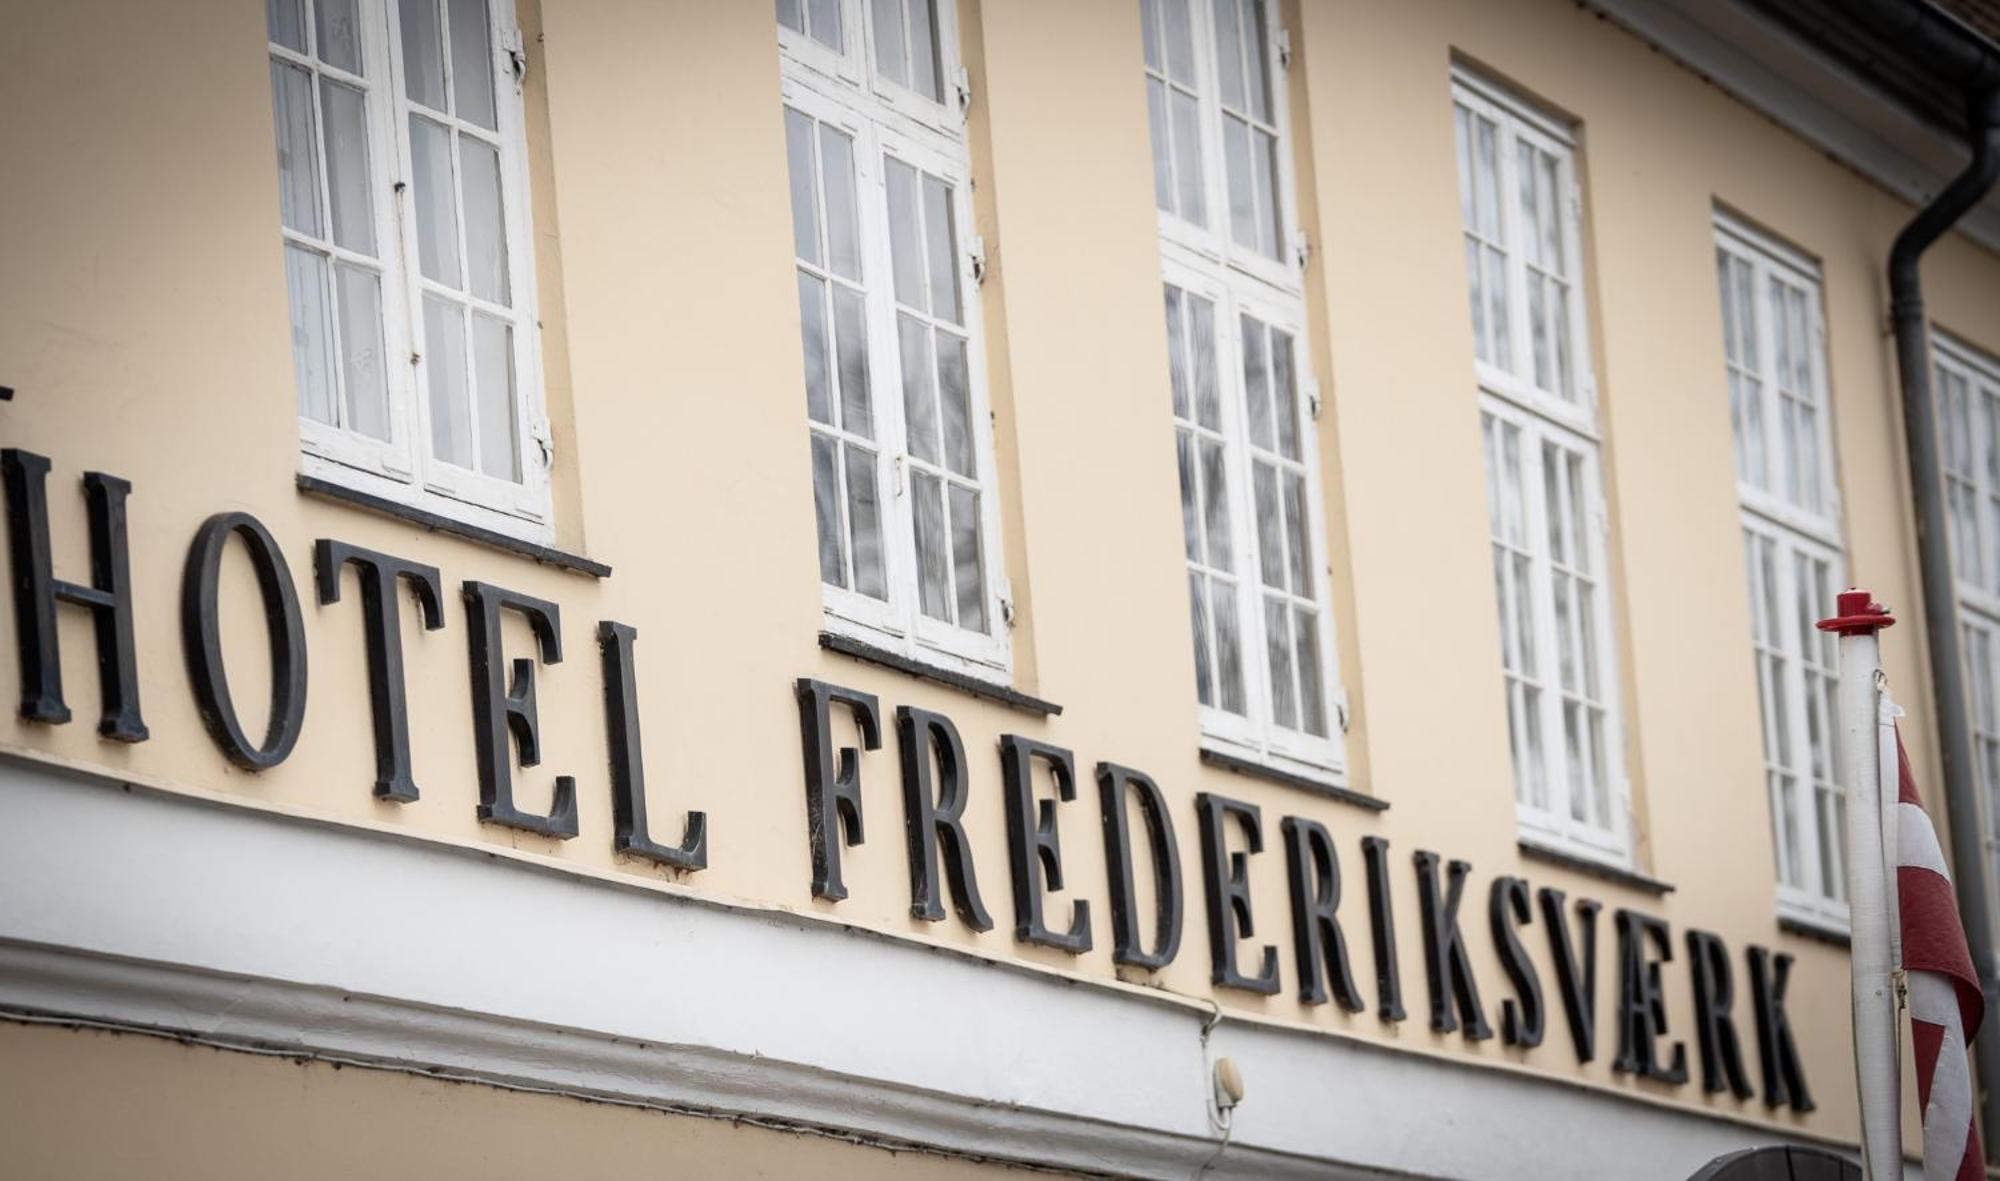 Frederiksvaerk Hotel Exterior photo